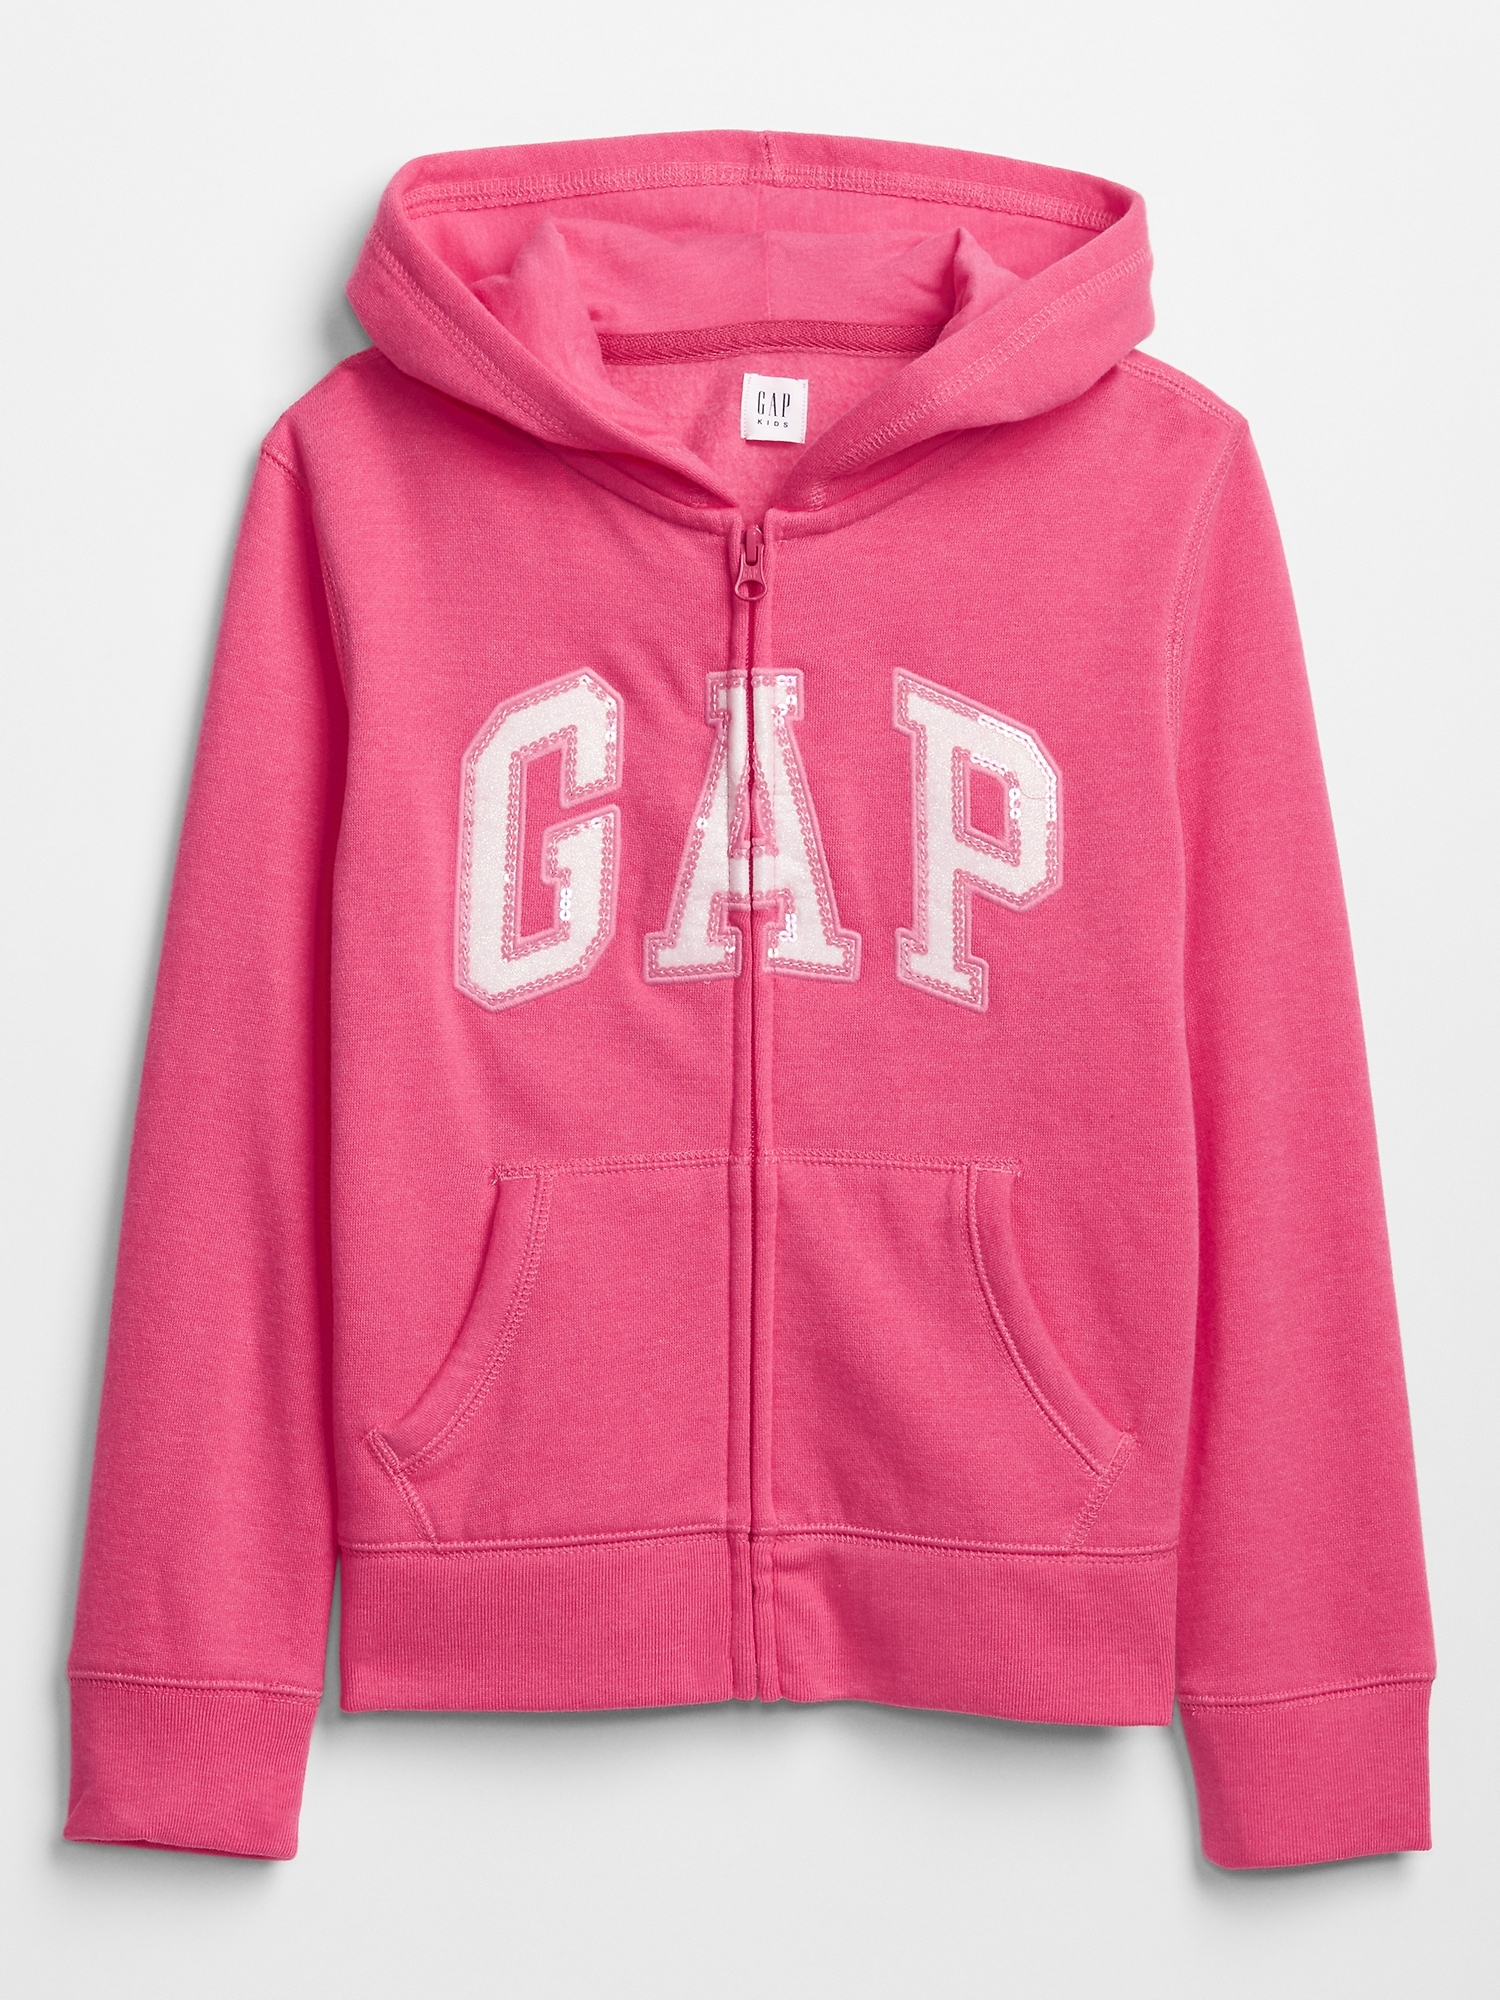 gap zip up jacket